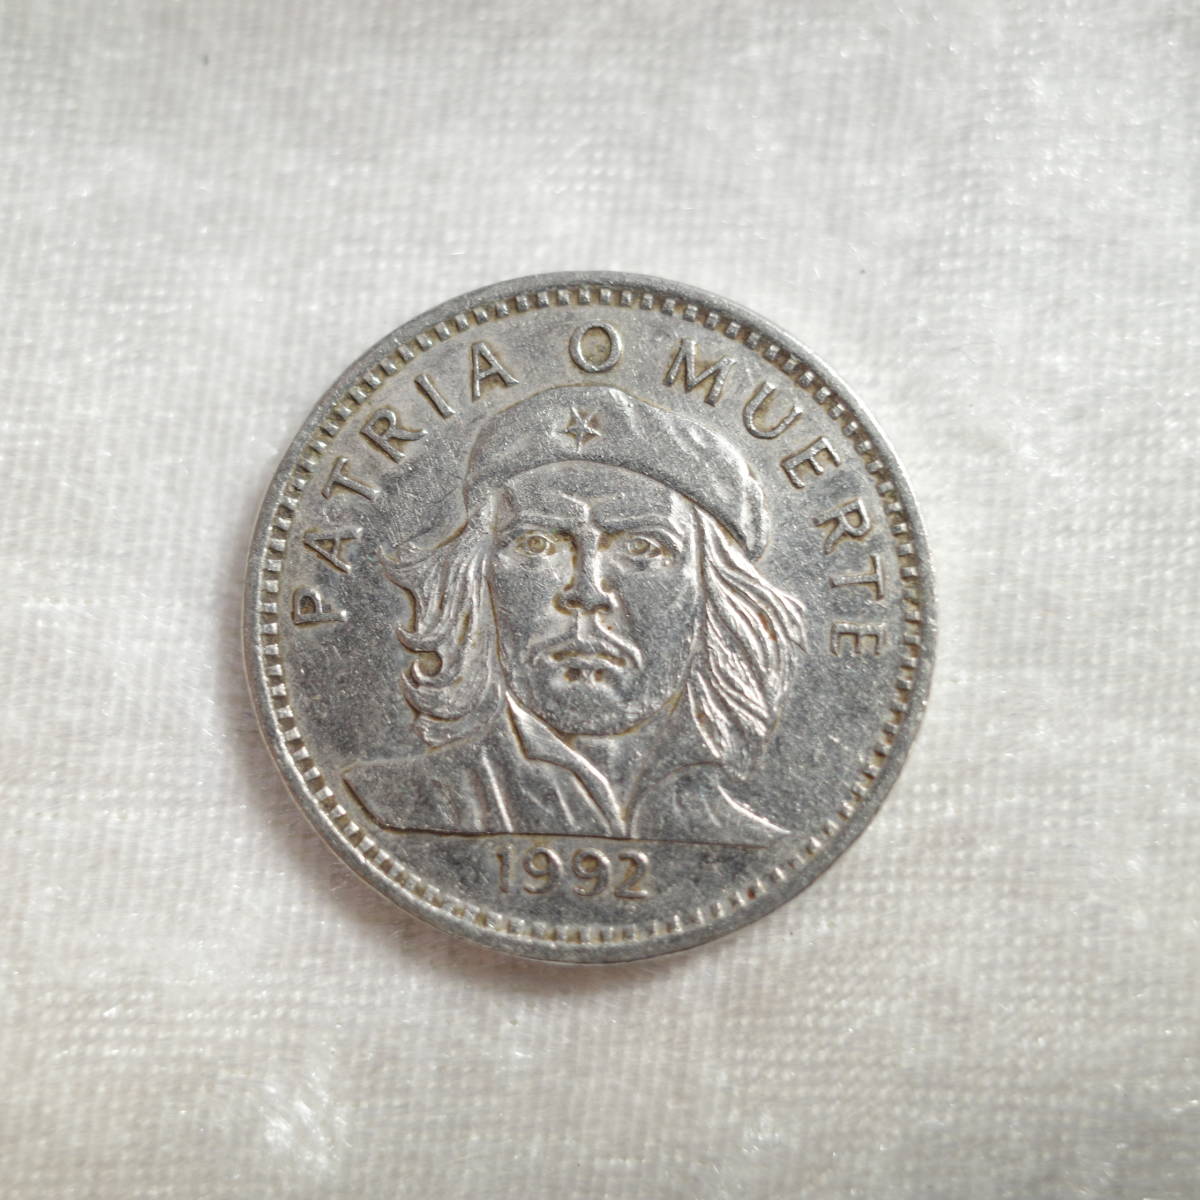 〇0283-8 Кубинский 3 Песонный Келштейл монета Чой Гевара 1992 Коллекция монет иностранные